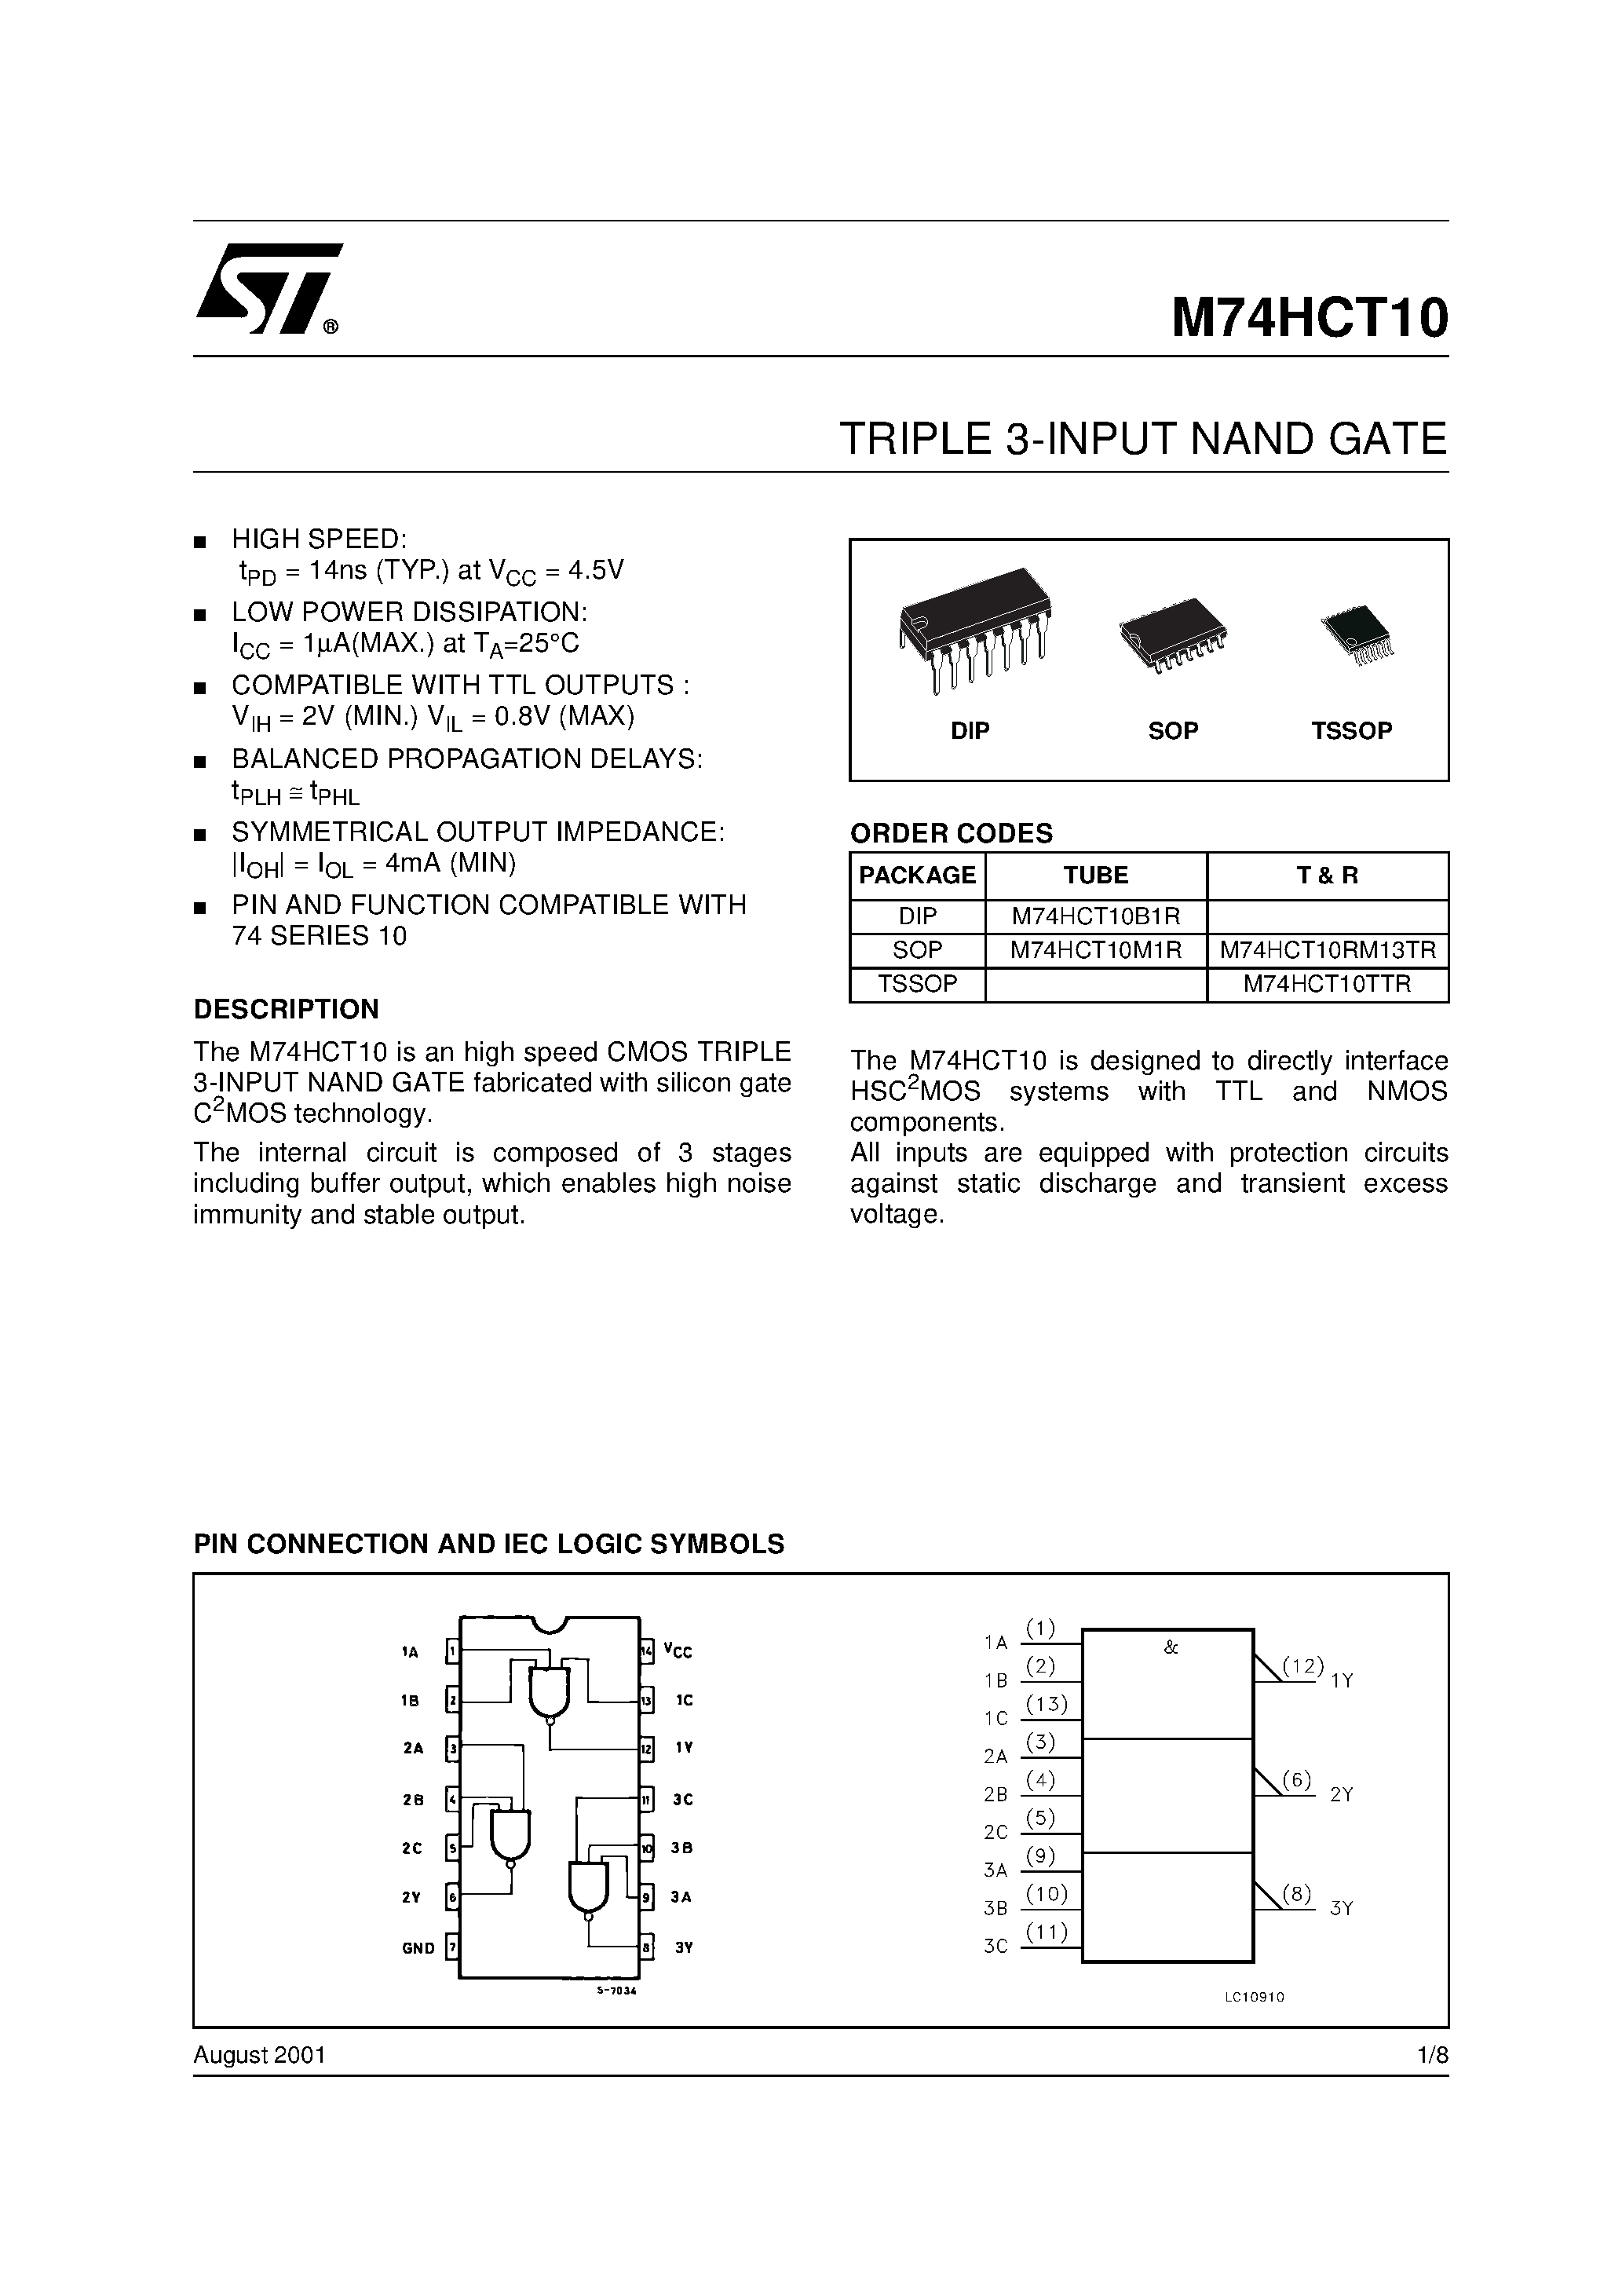 Datasheet M74HCT10 - TRIPLE 3-INPUT NAND GATE page 1